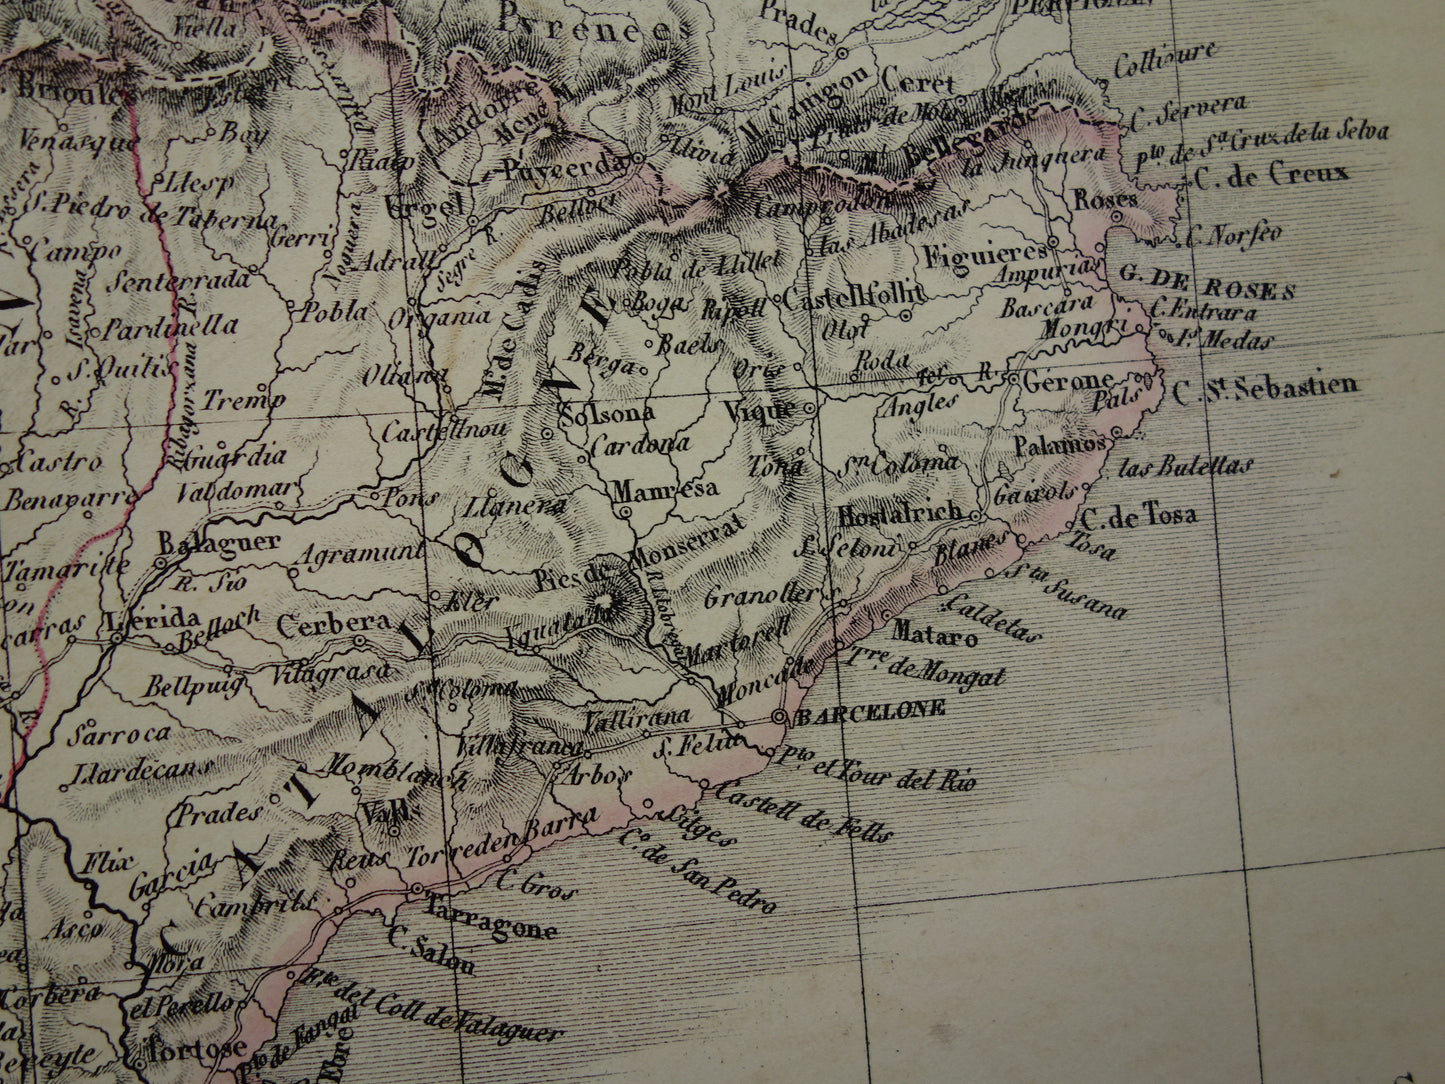 SPANJE grote oude kaart van Spanje en Portugal in 1851 originele antieke Franse handgekleurde landkaart met jaartal